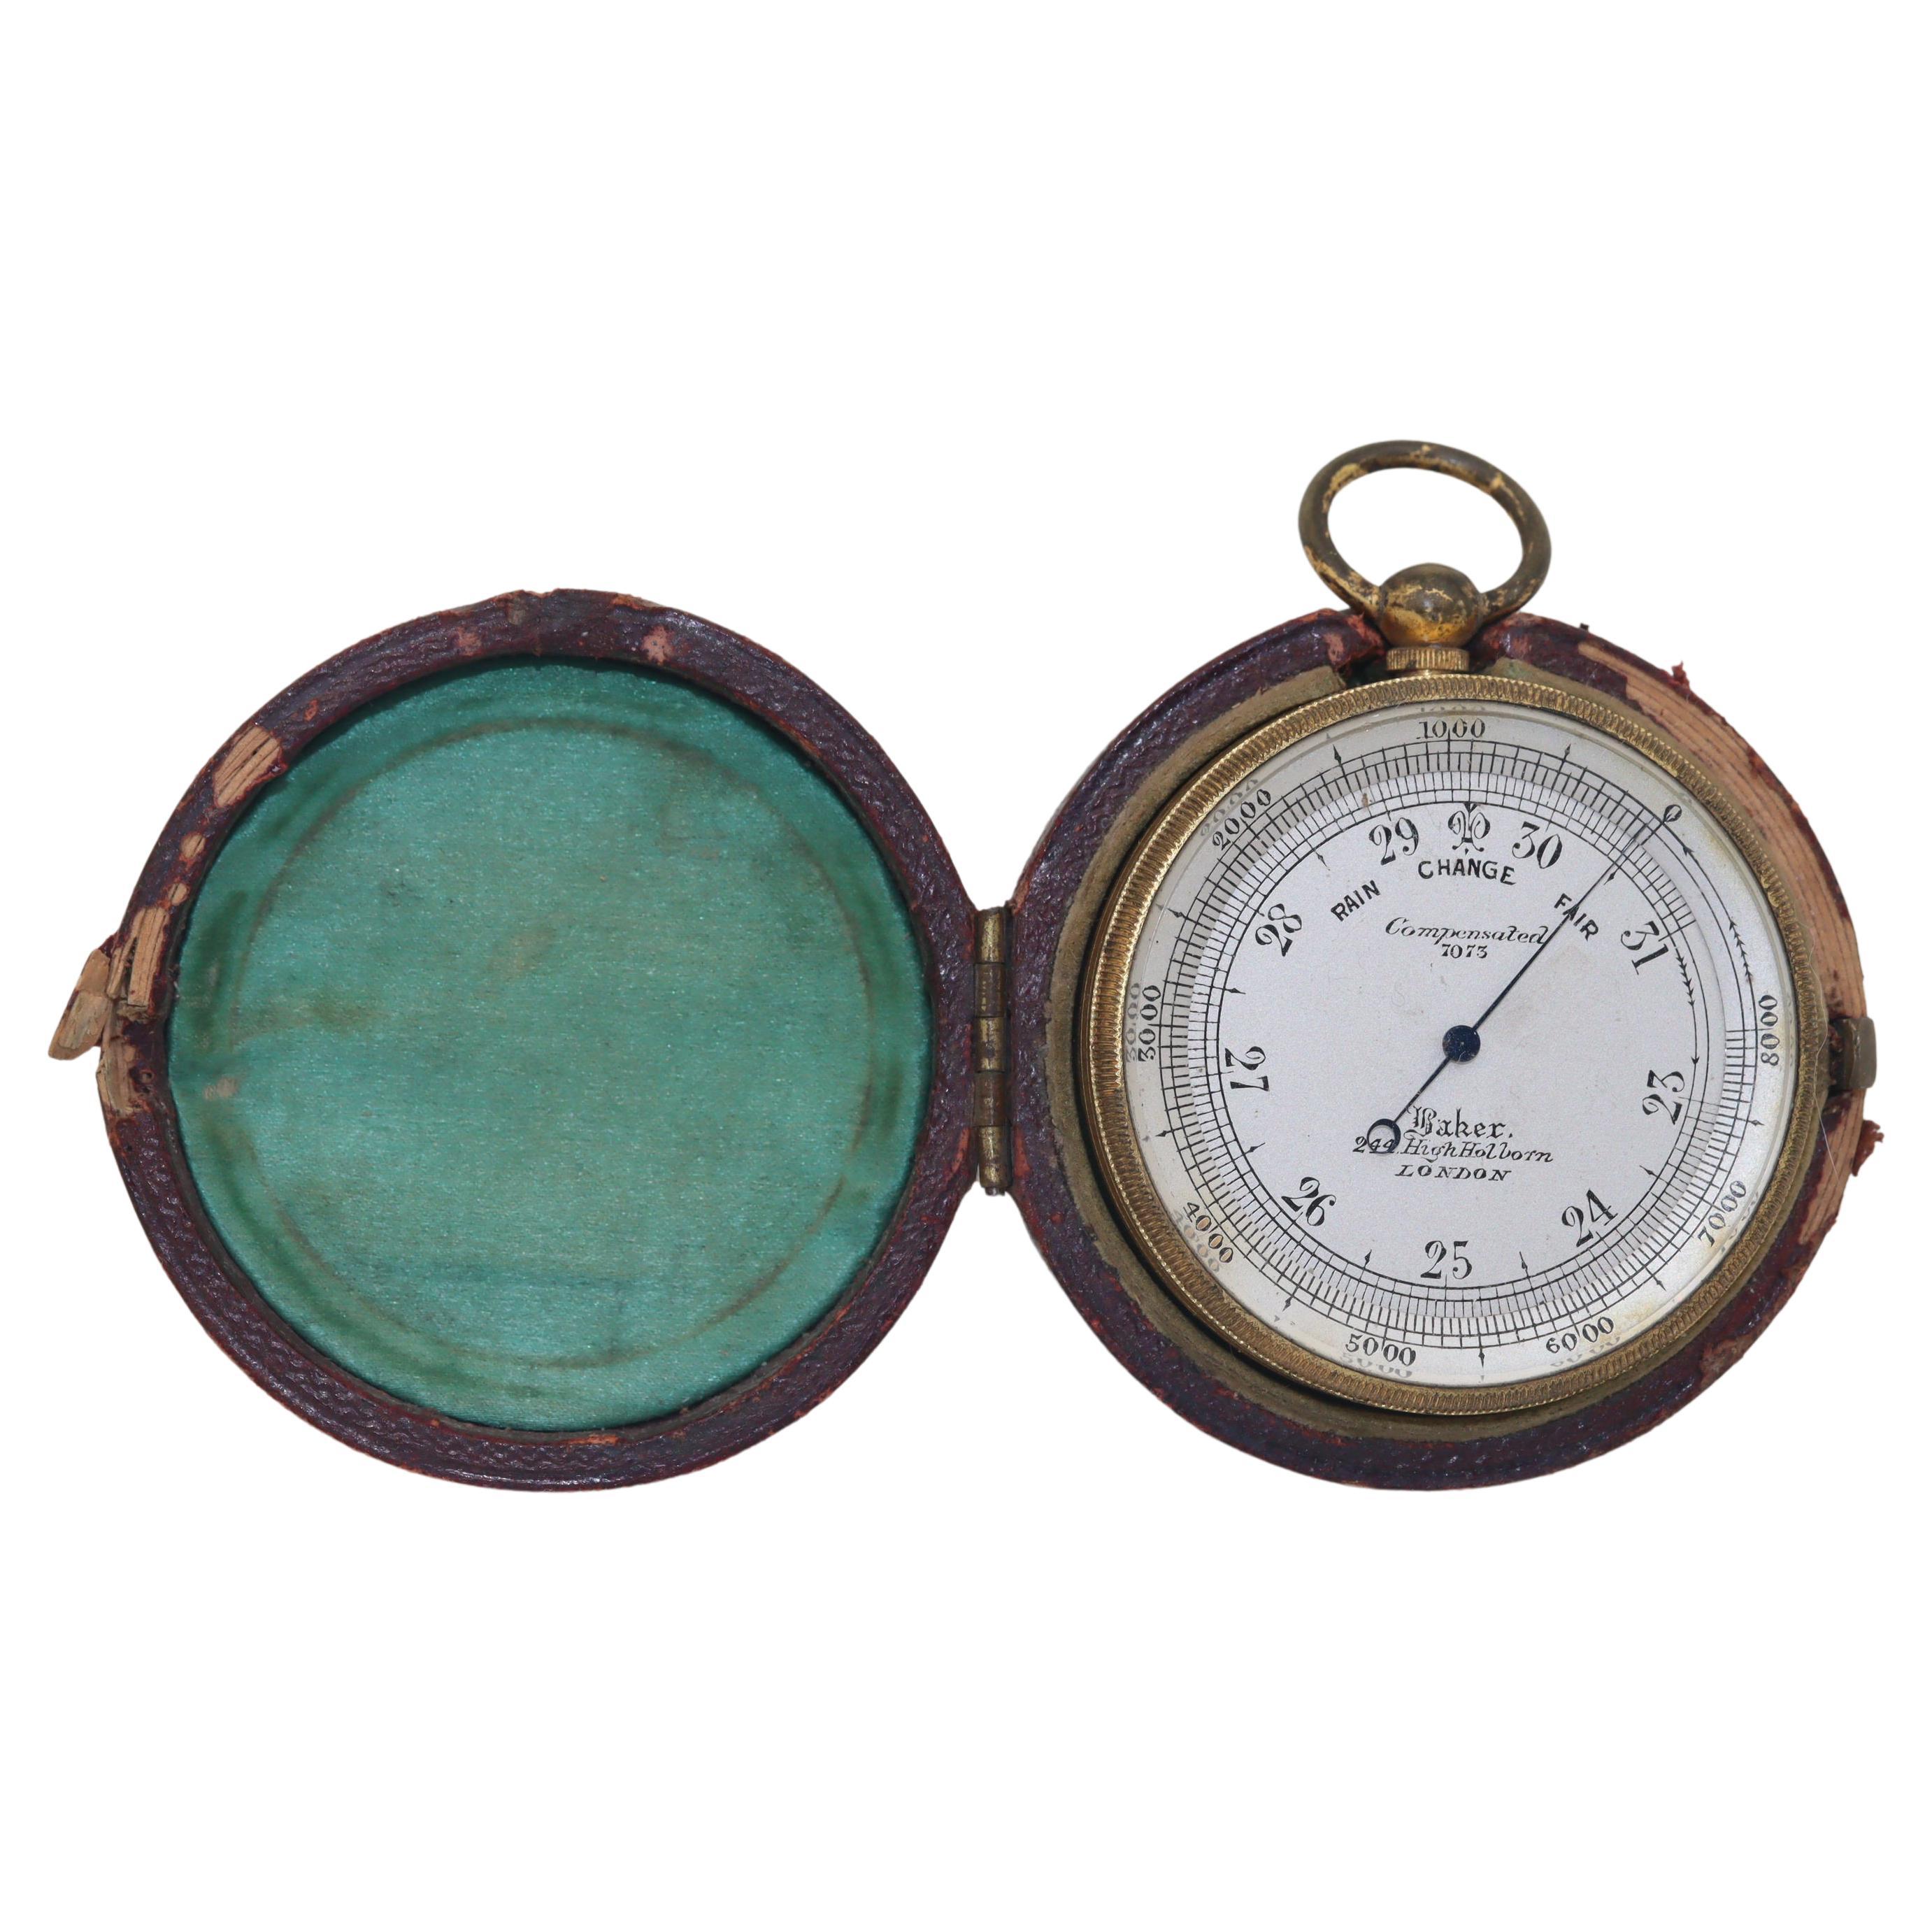 Pocket barometer by C Baker in original case For Sale